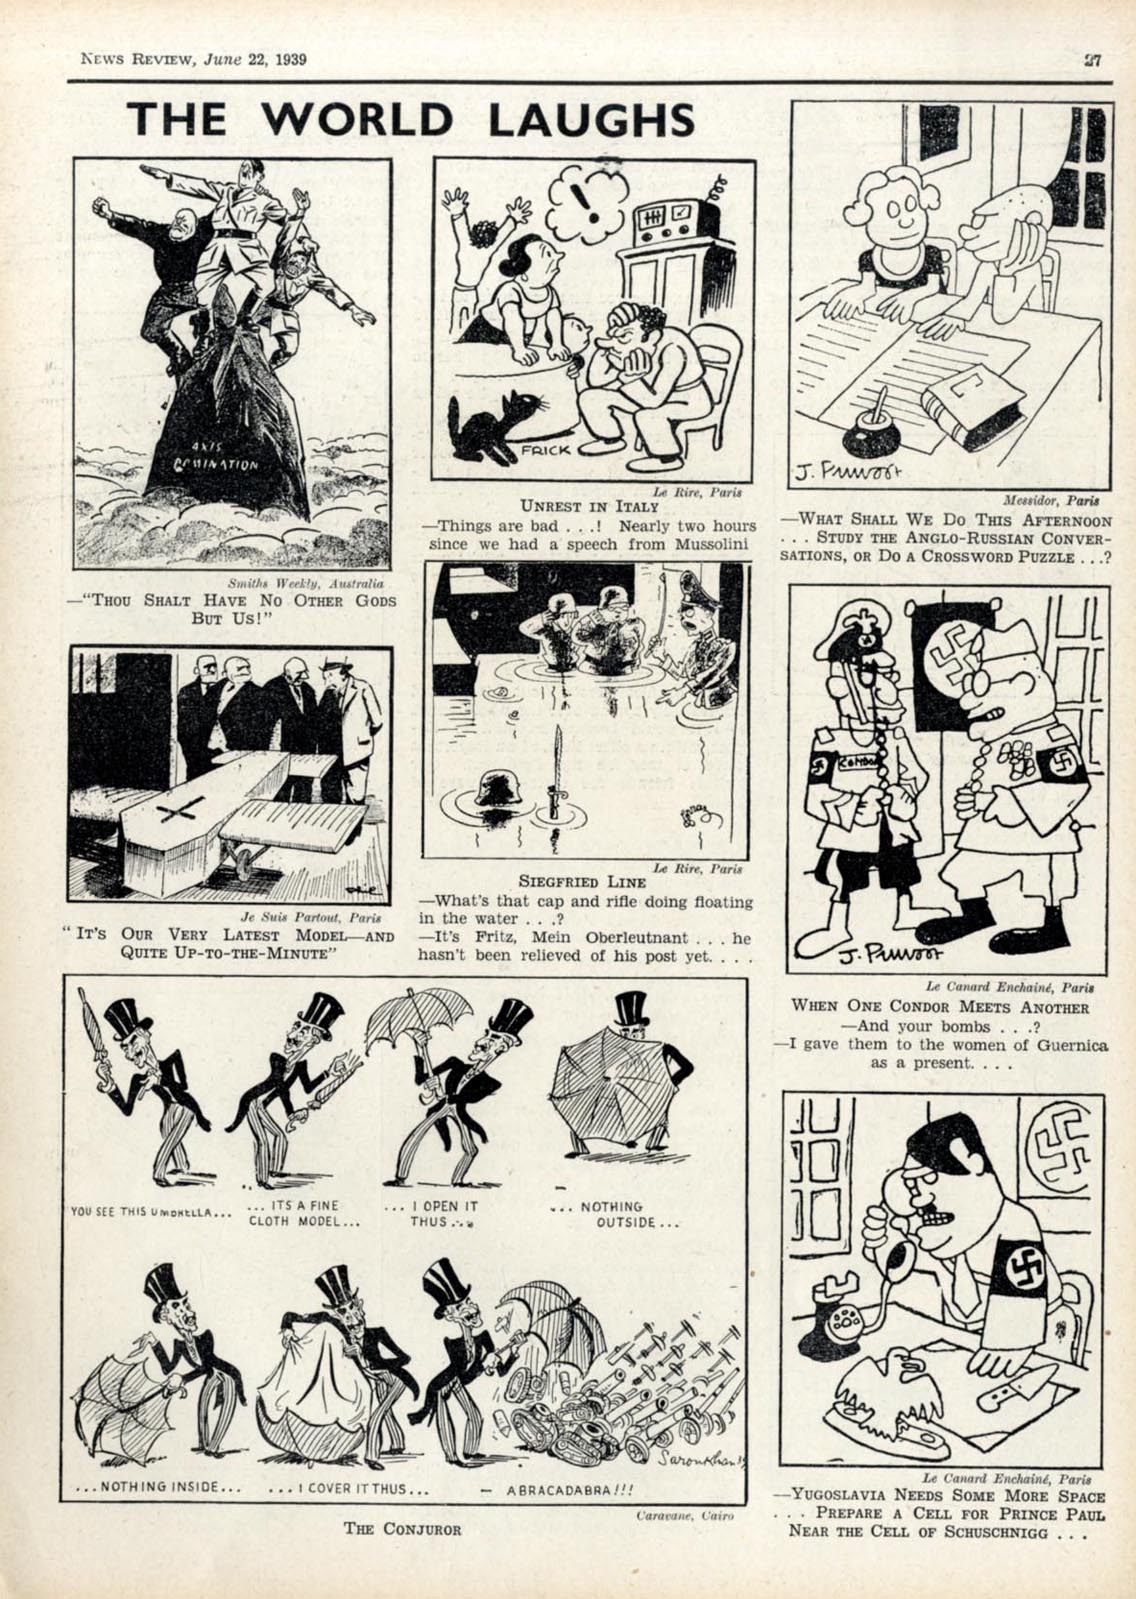 Newspaper Cartoons 1939 -, News Review compilations